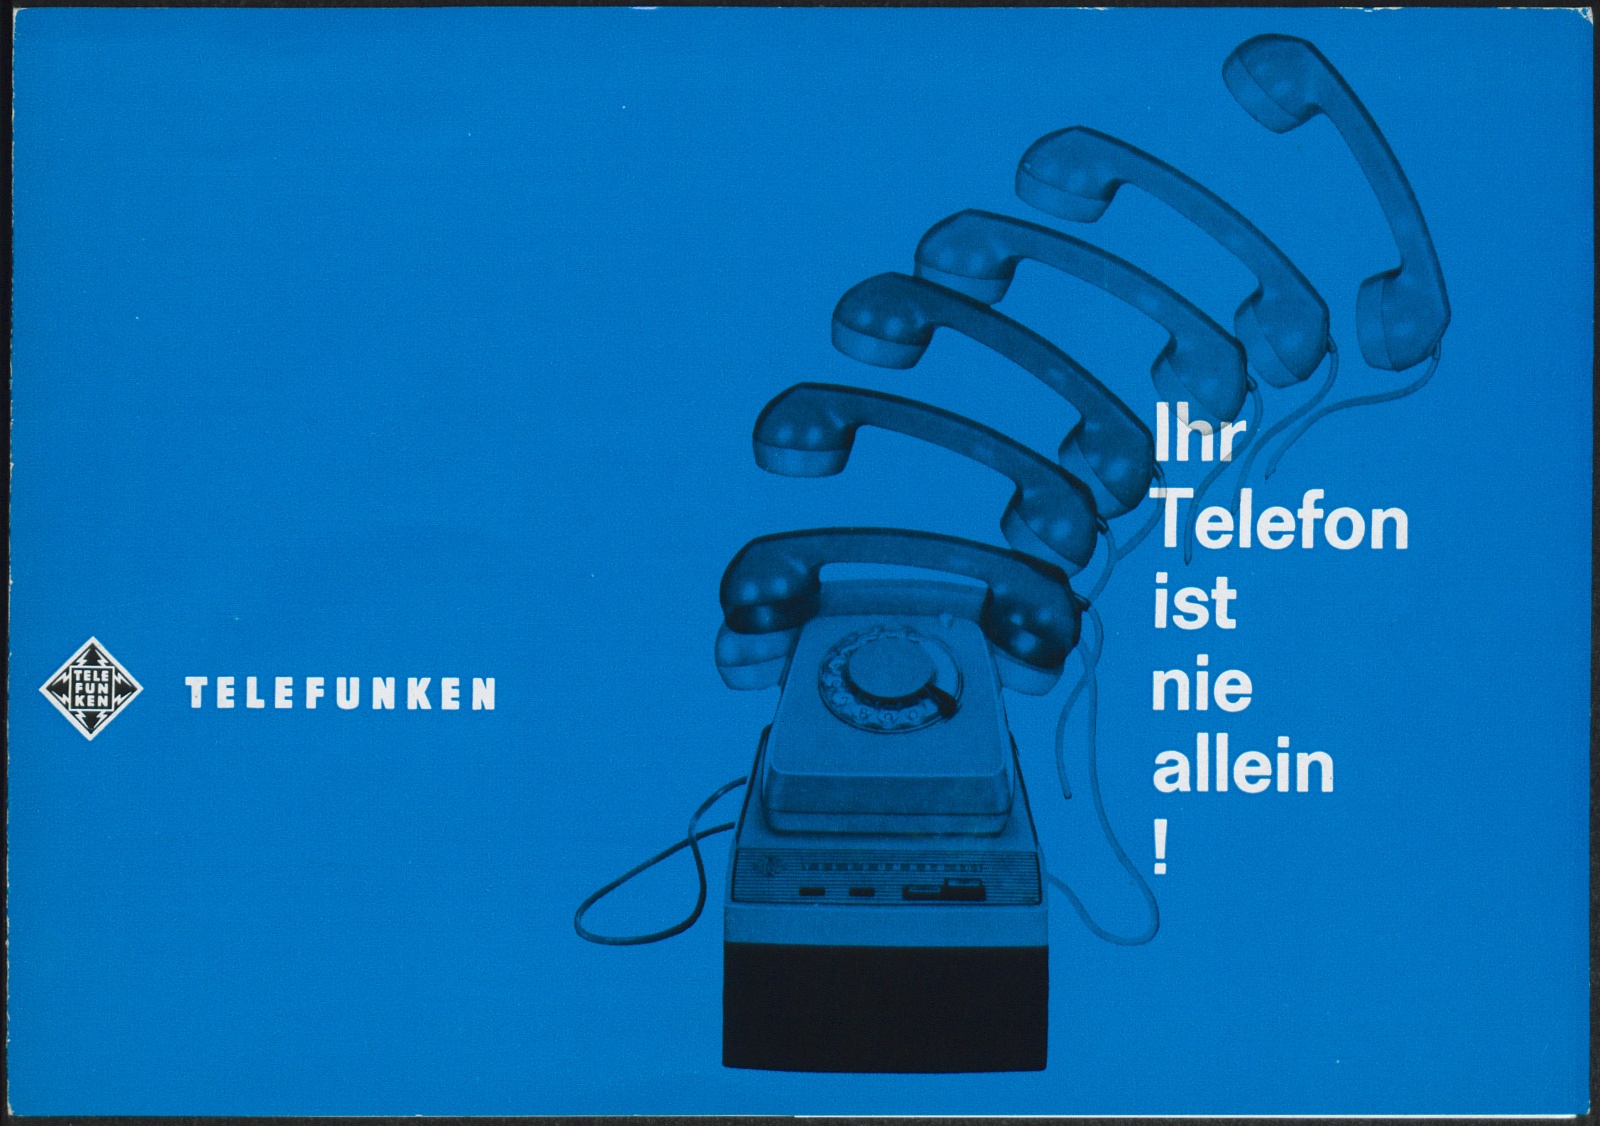 Werbeprospekt: Ihr Telefon ist nie allein! (Stiftung Deutsches Technikmuseum Berlin CC0)